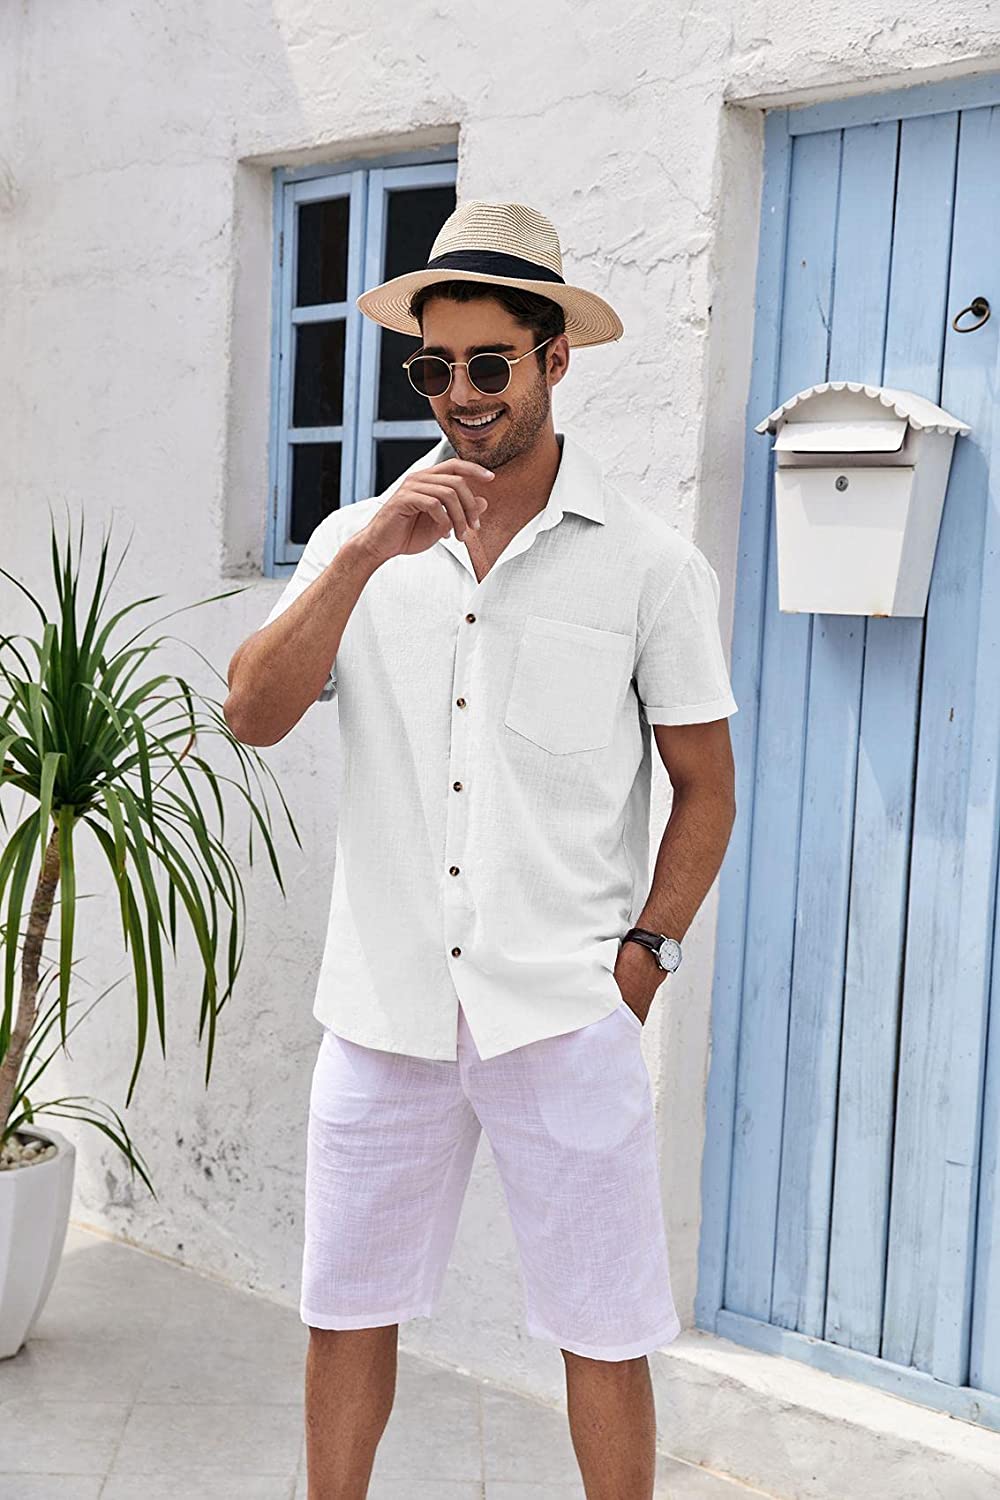 Mens Short Sleeve Button Up Shirts Linen Cotton Beach Tops Spread Collar Plain Summer T Shirt with Pocket